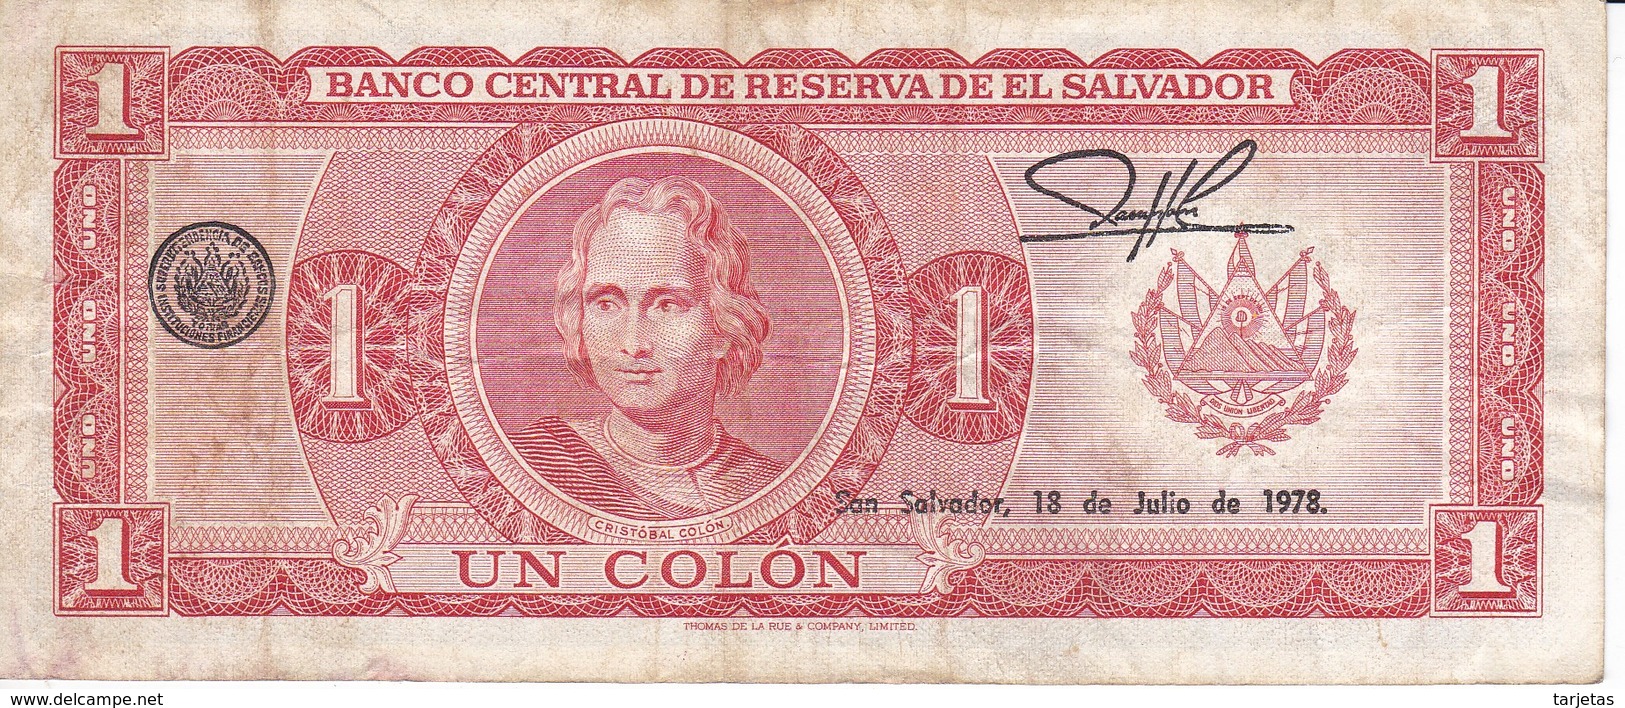 BILLETE DE EL SALVADOR DE 1 COLON DEL AÑO 1976 / 1978 DE CRISTOBAL COLON(BANKNOTE) - El Salvador